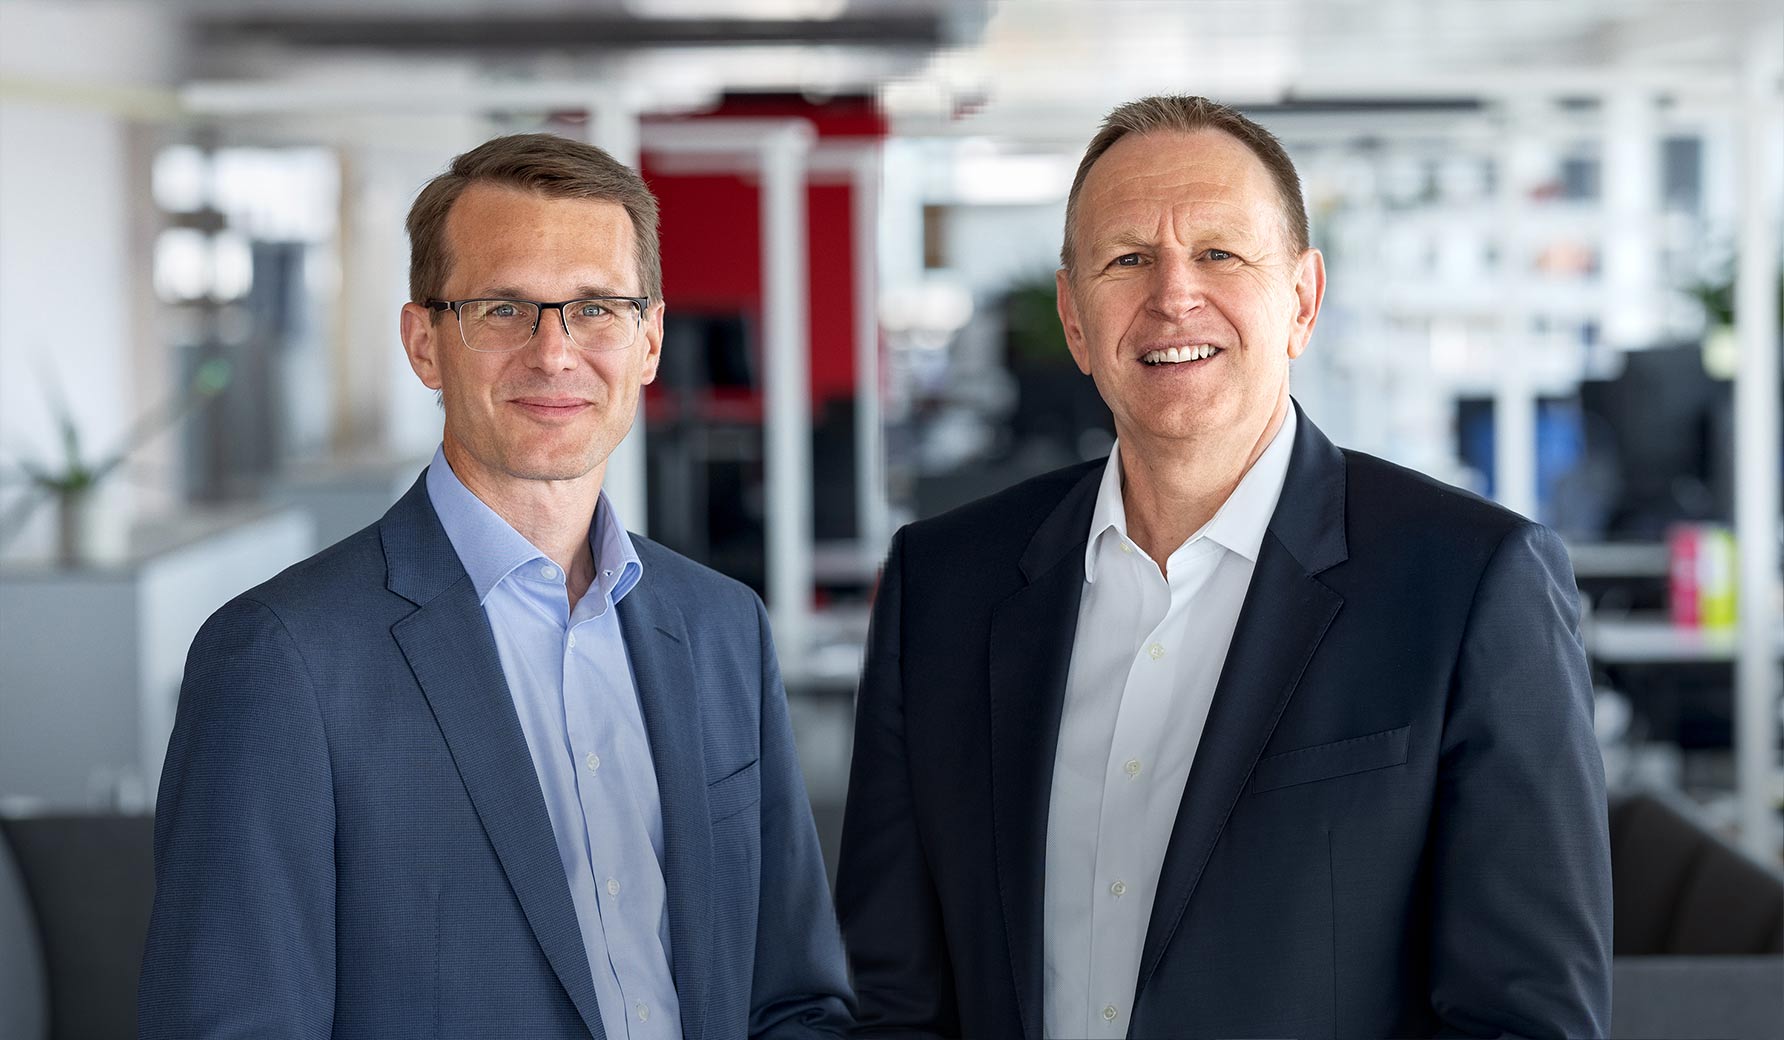 From left: Christoph Aeschlimann, CEO Swisscom Ltd and Michael Rechsteiner, Chairman of the Board of Directors Swisscom Ltd.